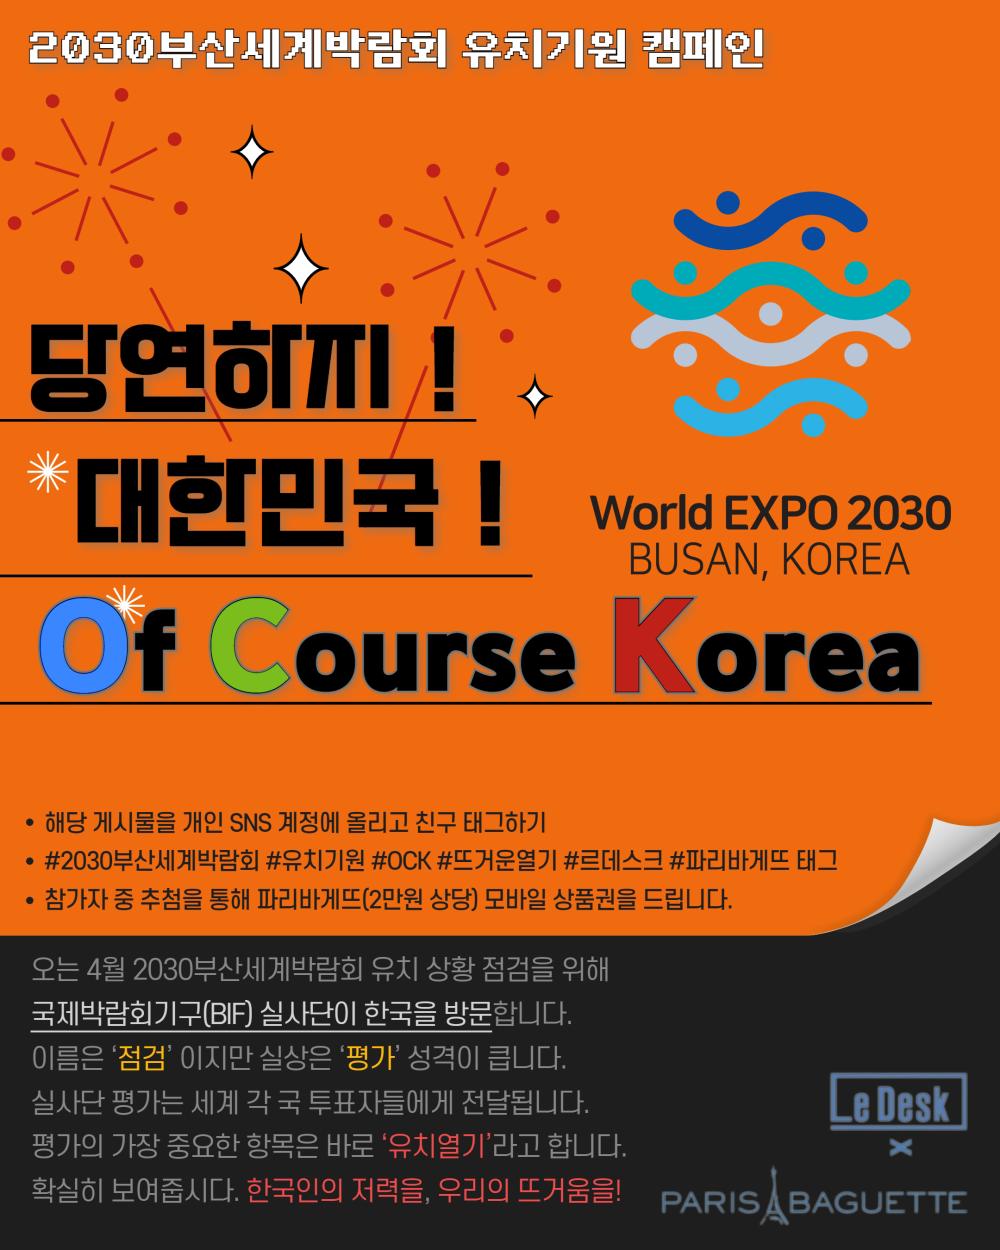 [알립니다]2030부산국제박람회 응원 캠페인 ‘당연하지 대한민국’ 